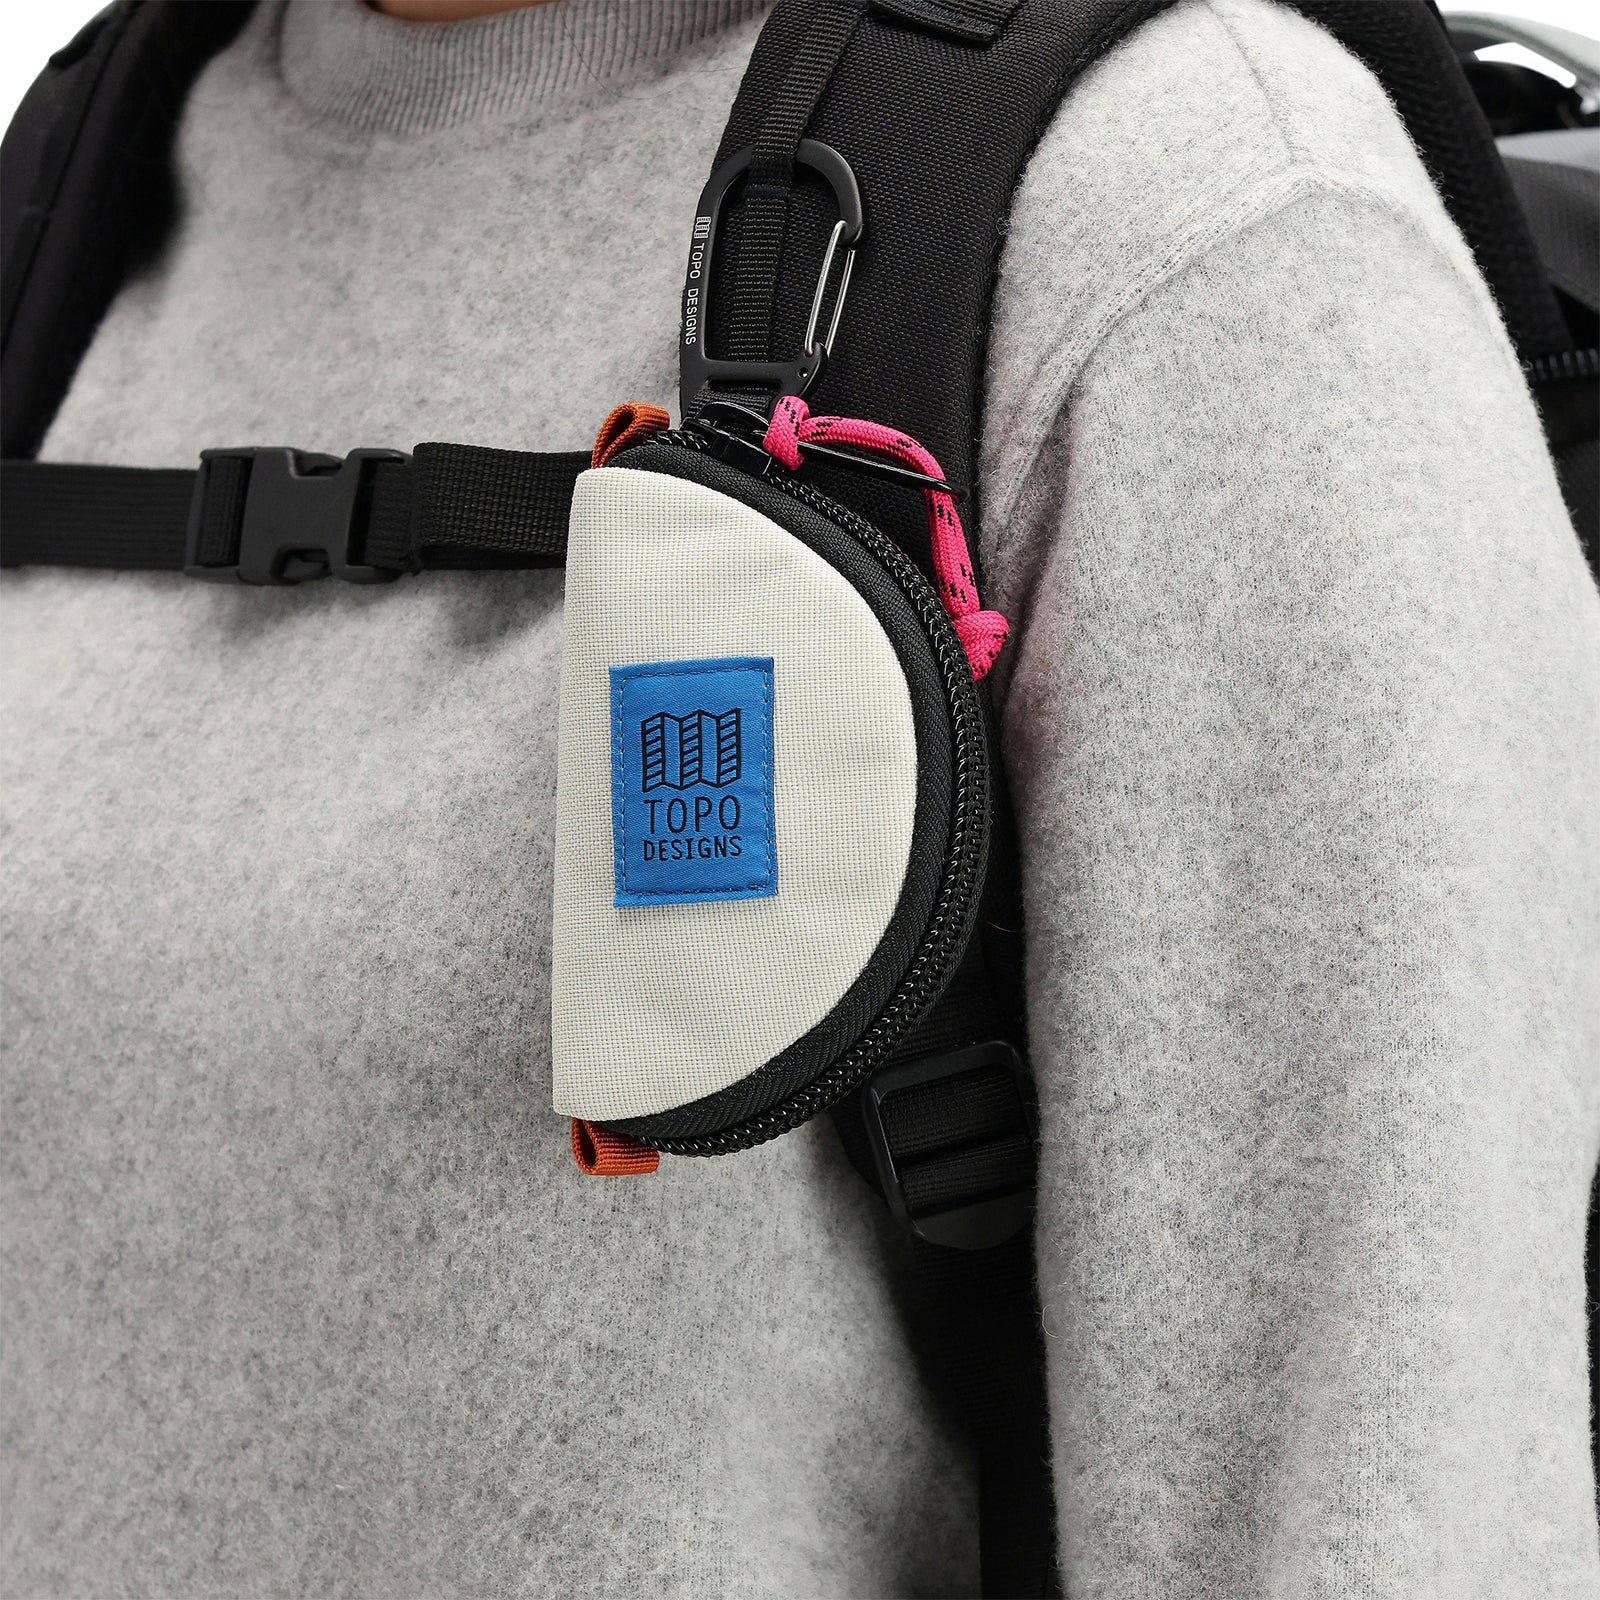 General model shot of Topo Designs Taco Bag carabiner key clip keychain bag in "Bone White" nylon.